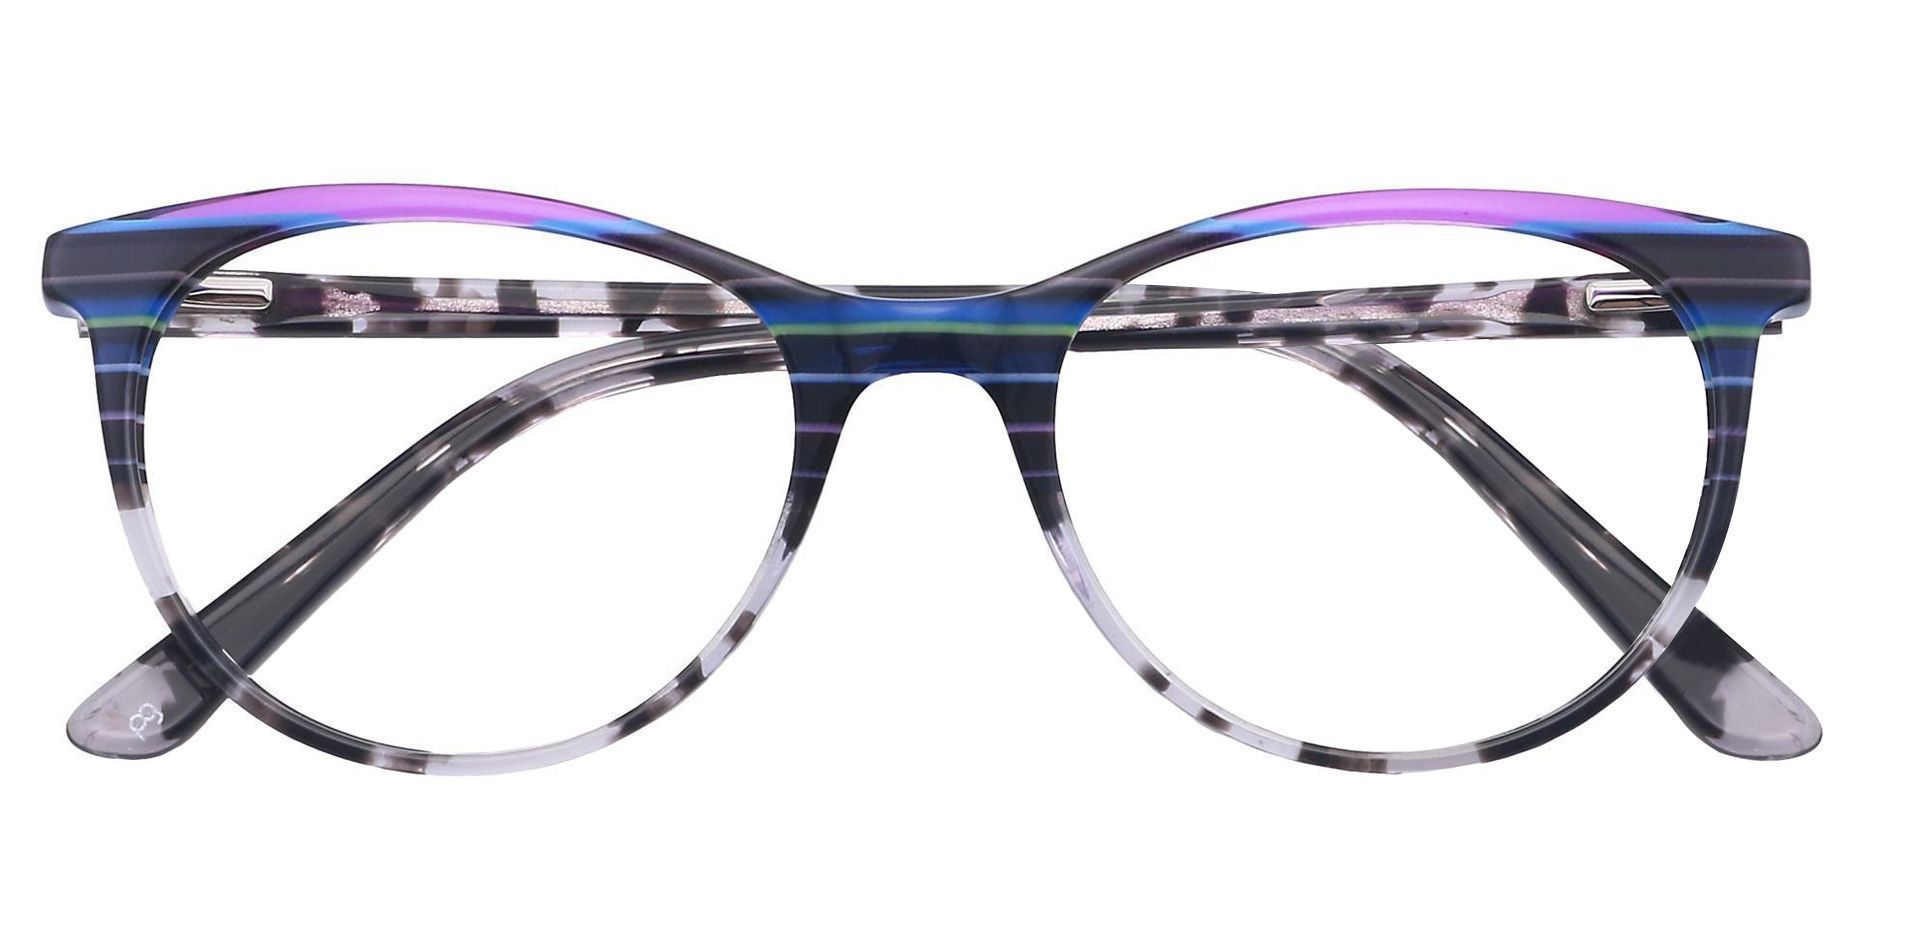 Patagonia Oval Progressive Glasses - Multicolored Blue Stripes  Multicolor